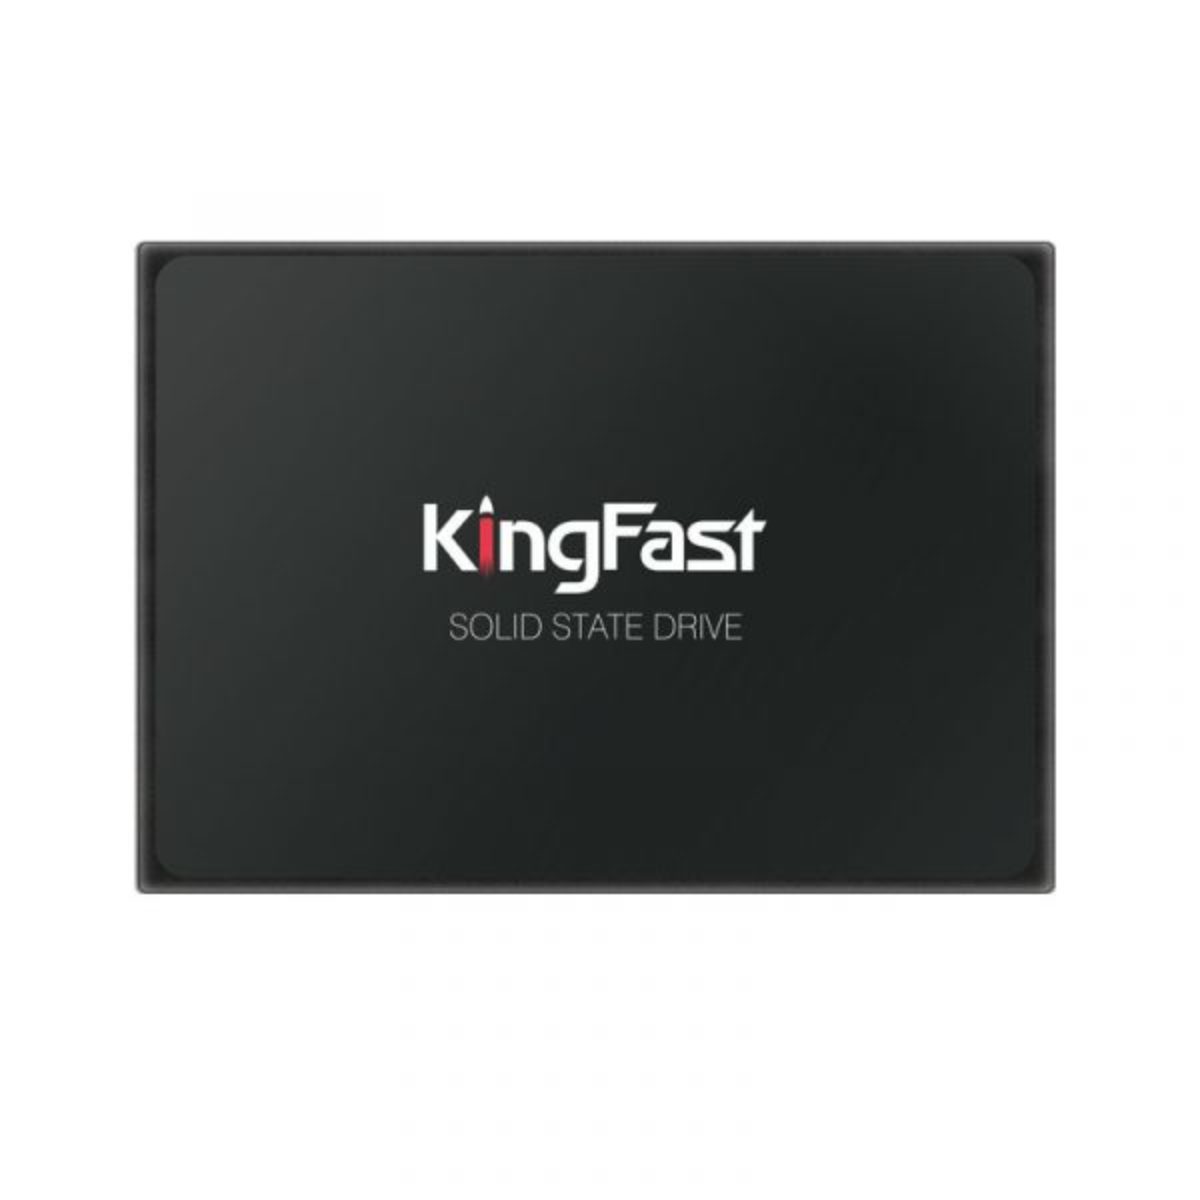 Kingfast F12 SATA3 SSD - Kingfast SSD